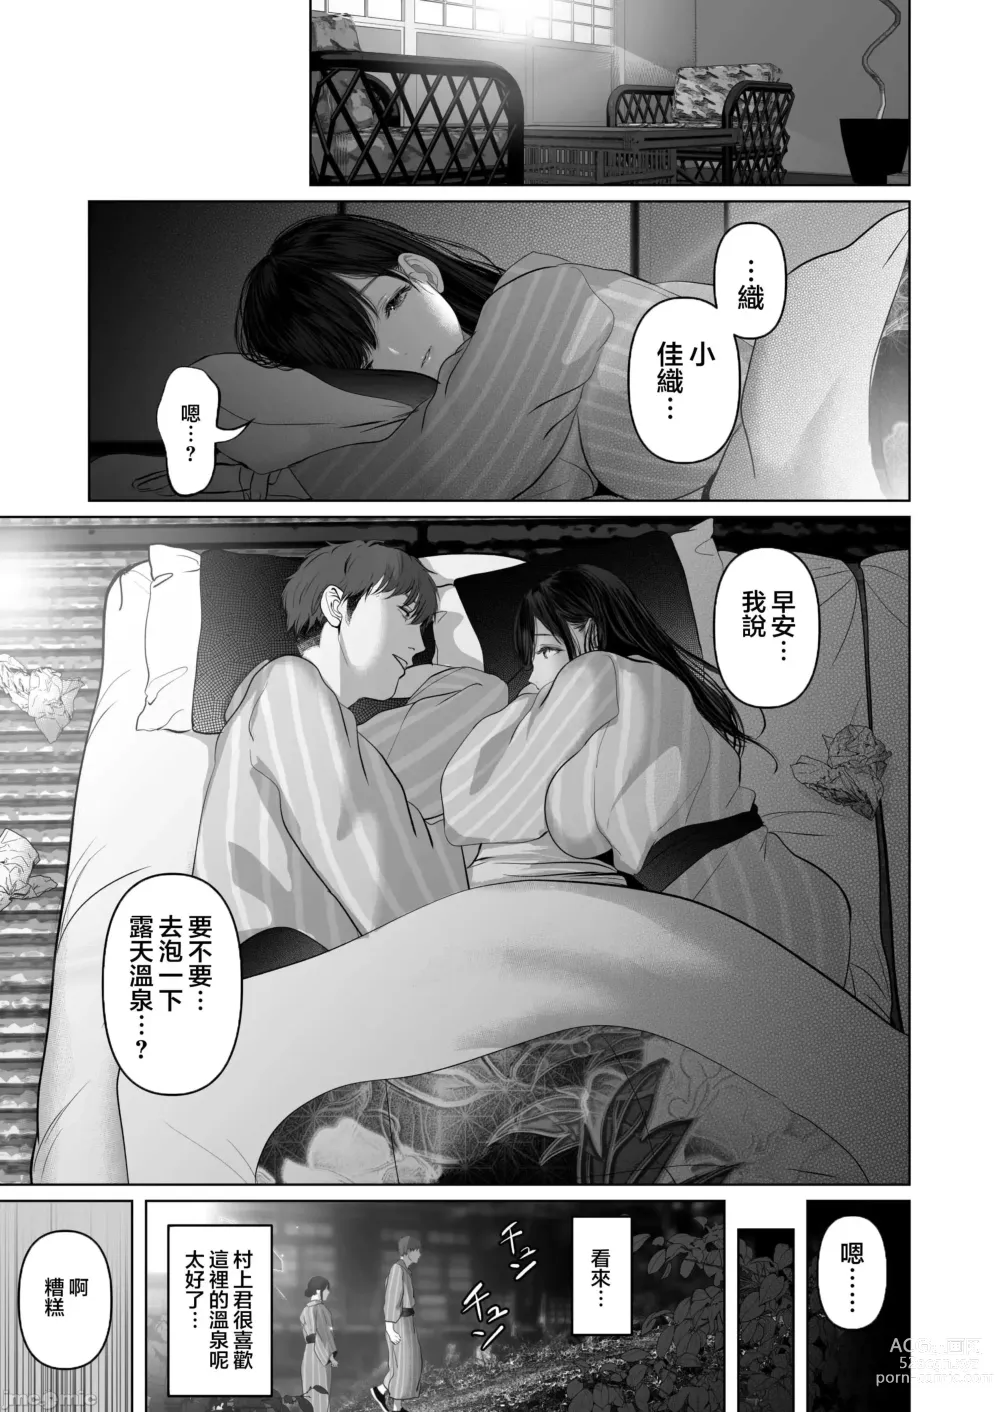 Page 549 of doujinshi Anata ga Nozomu nara 1-5